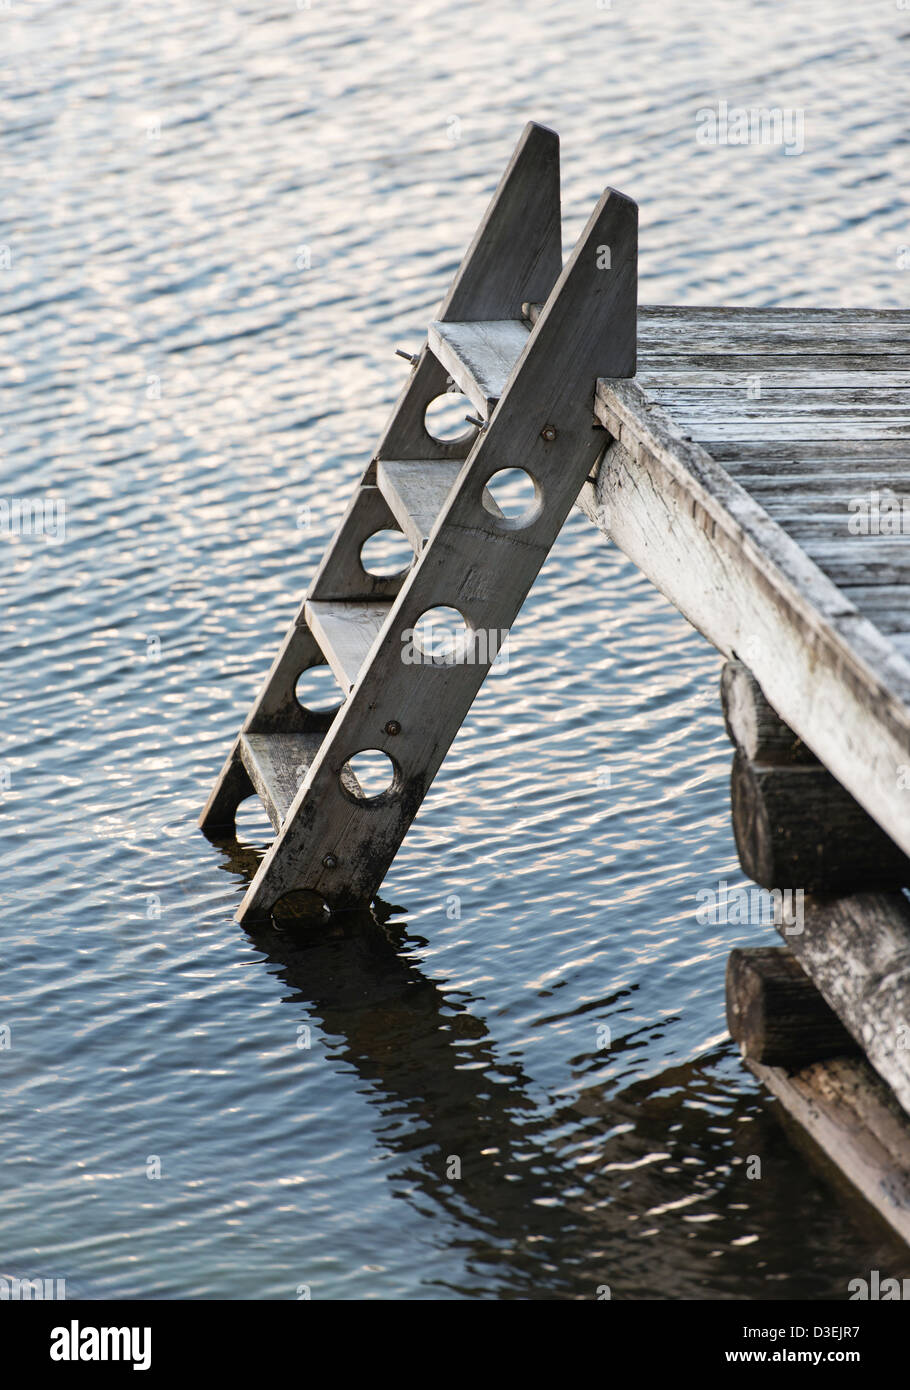 Serata tranquilla scena di mare e pontile in legno con scaletta nell'arcipelago di Stoccolma, Svezia Foto Stock